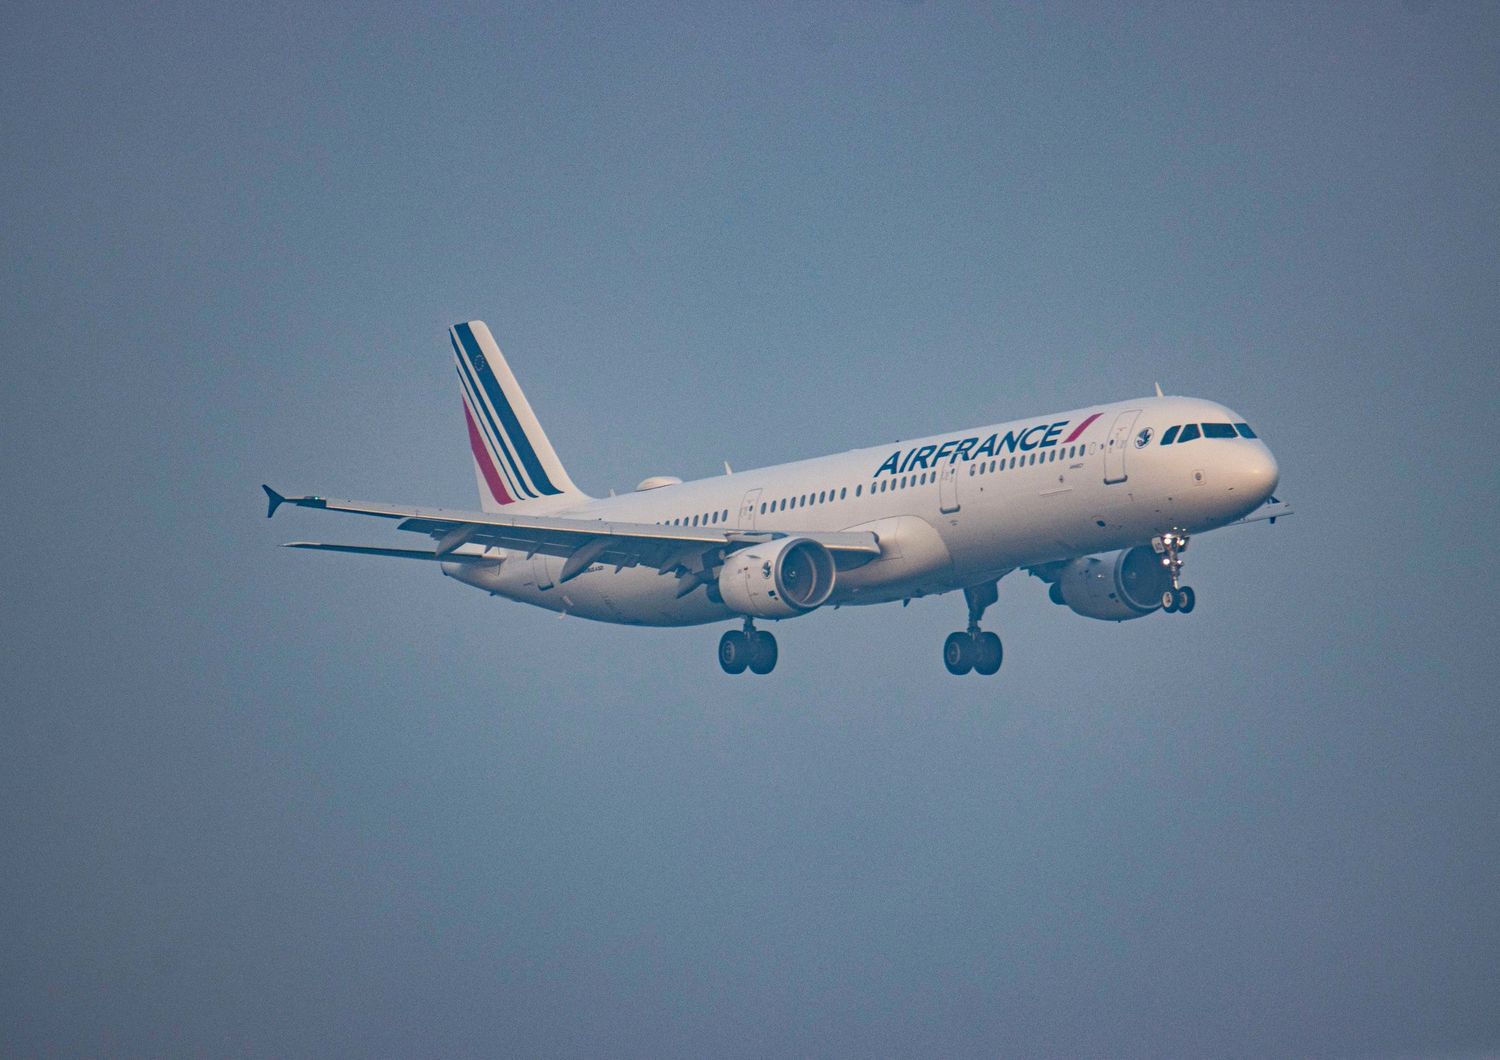 volo Air France